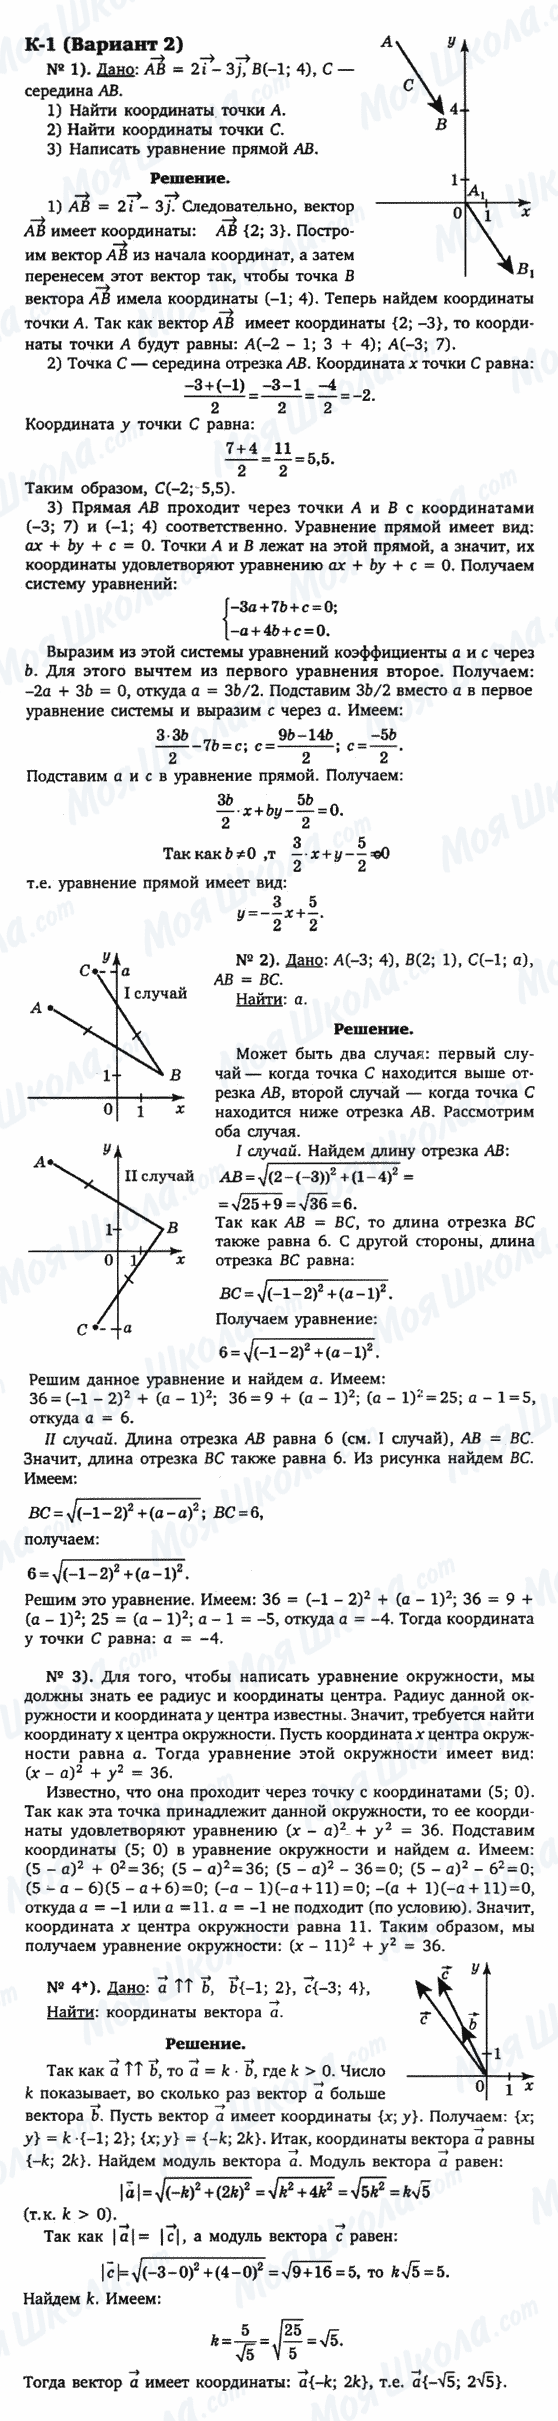 ГДЗ Геометрія 9 клас сторінка к-1(вариант 2)